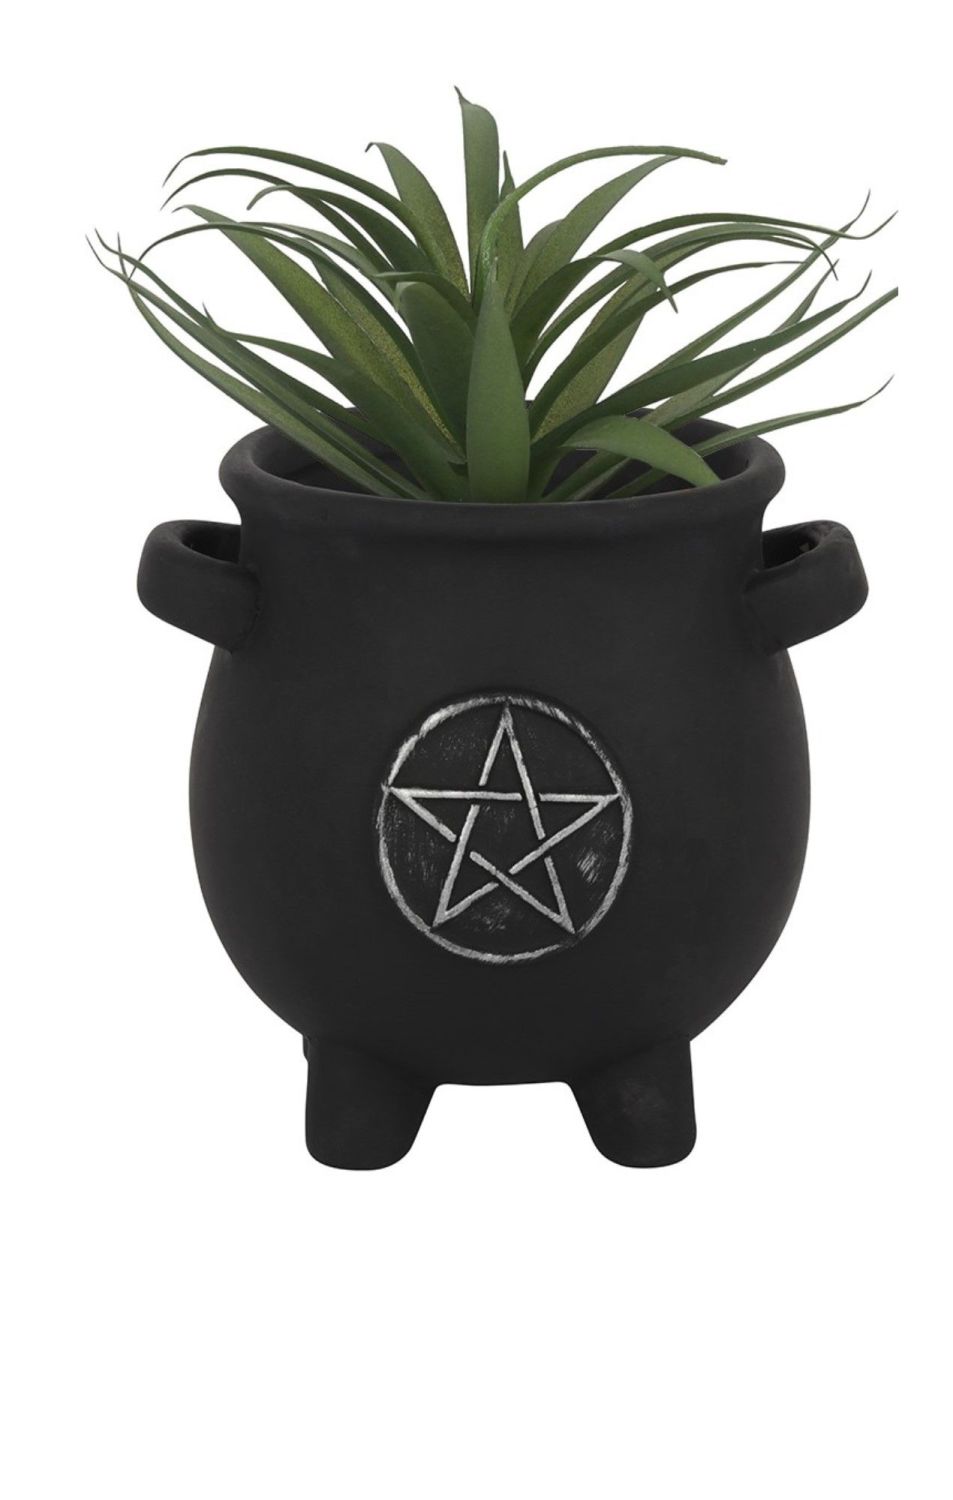 Pentagram cauldron plant pot RRP £10.99